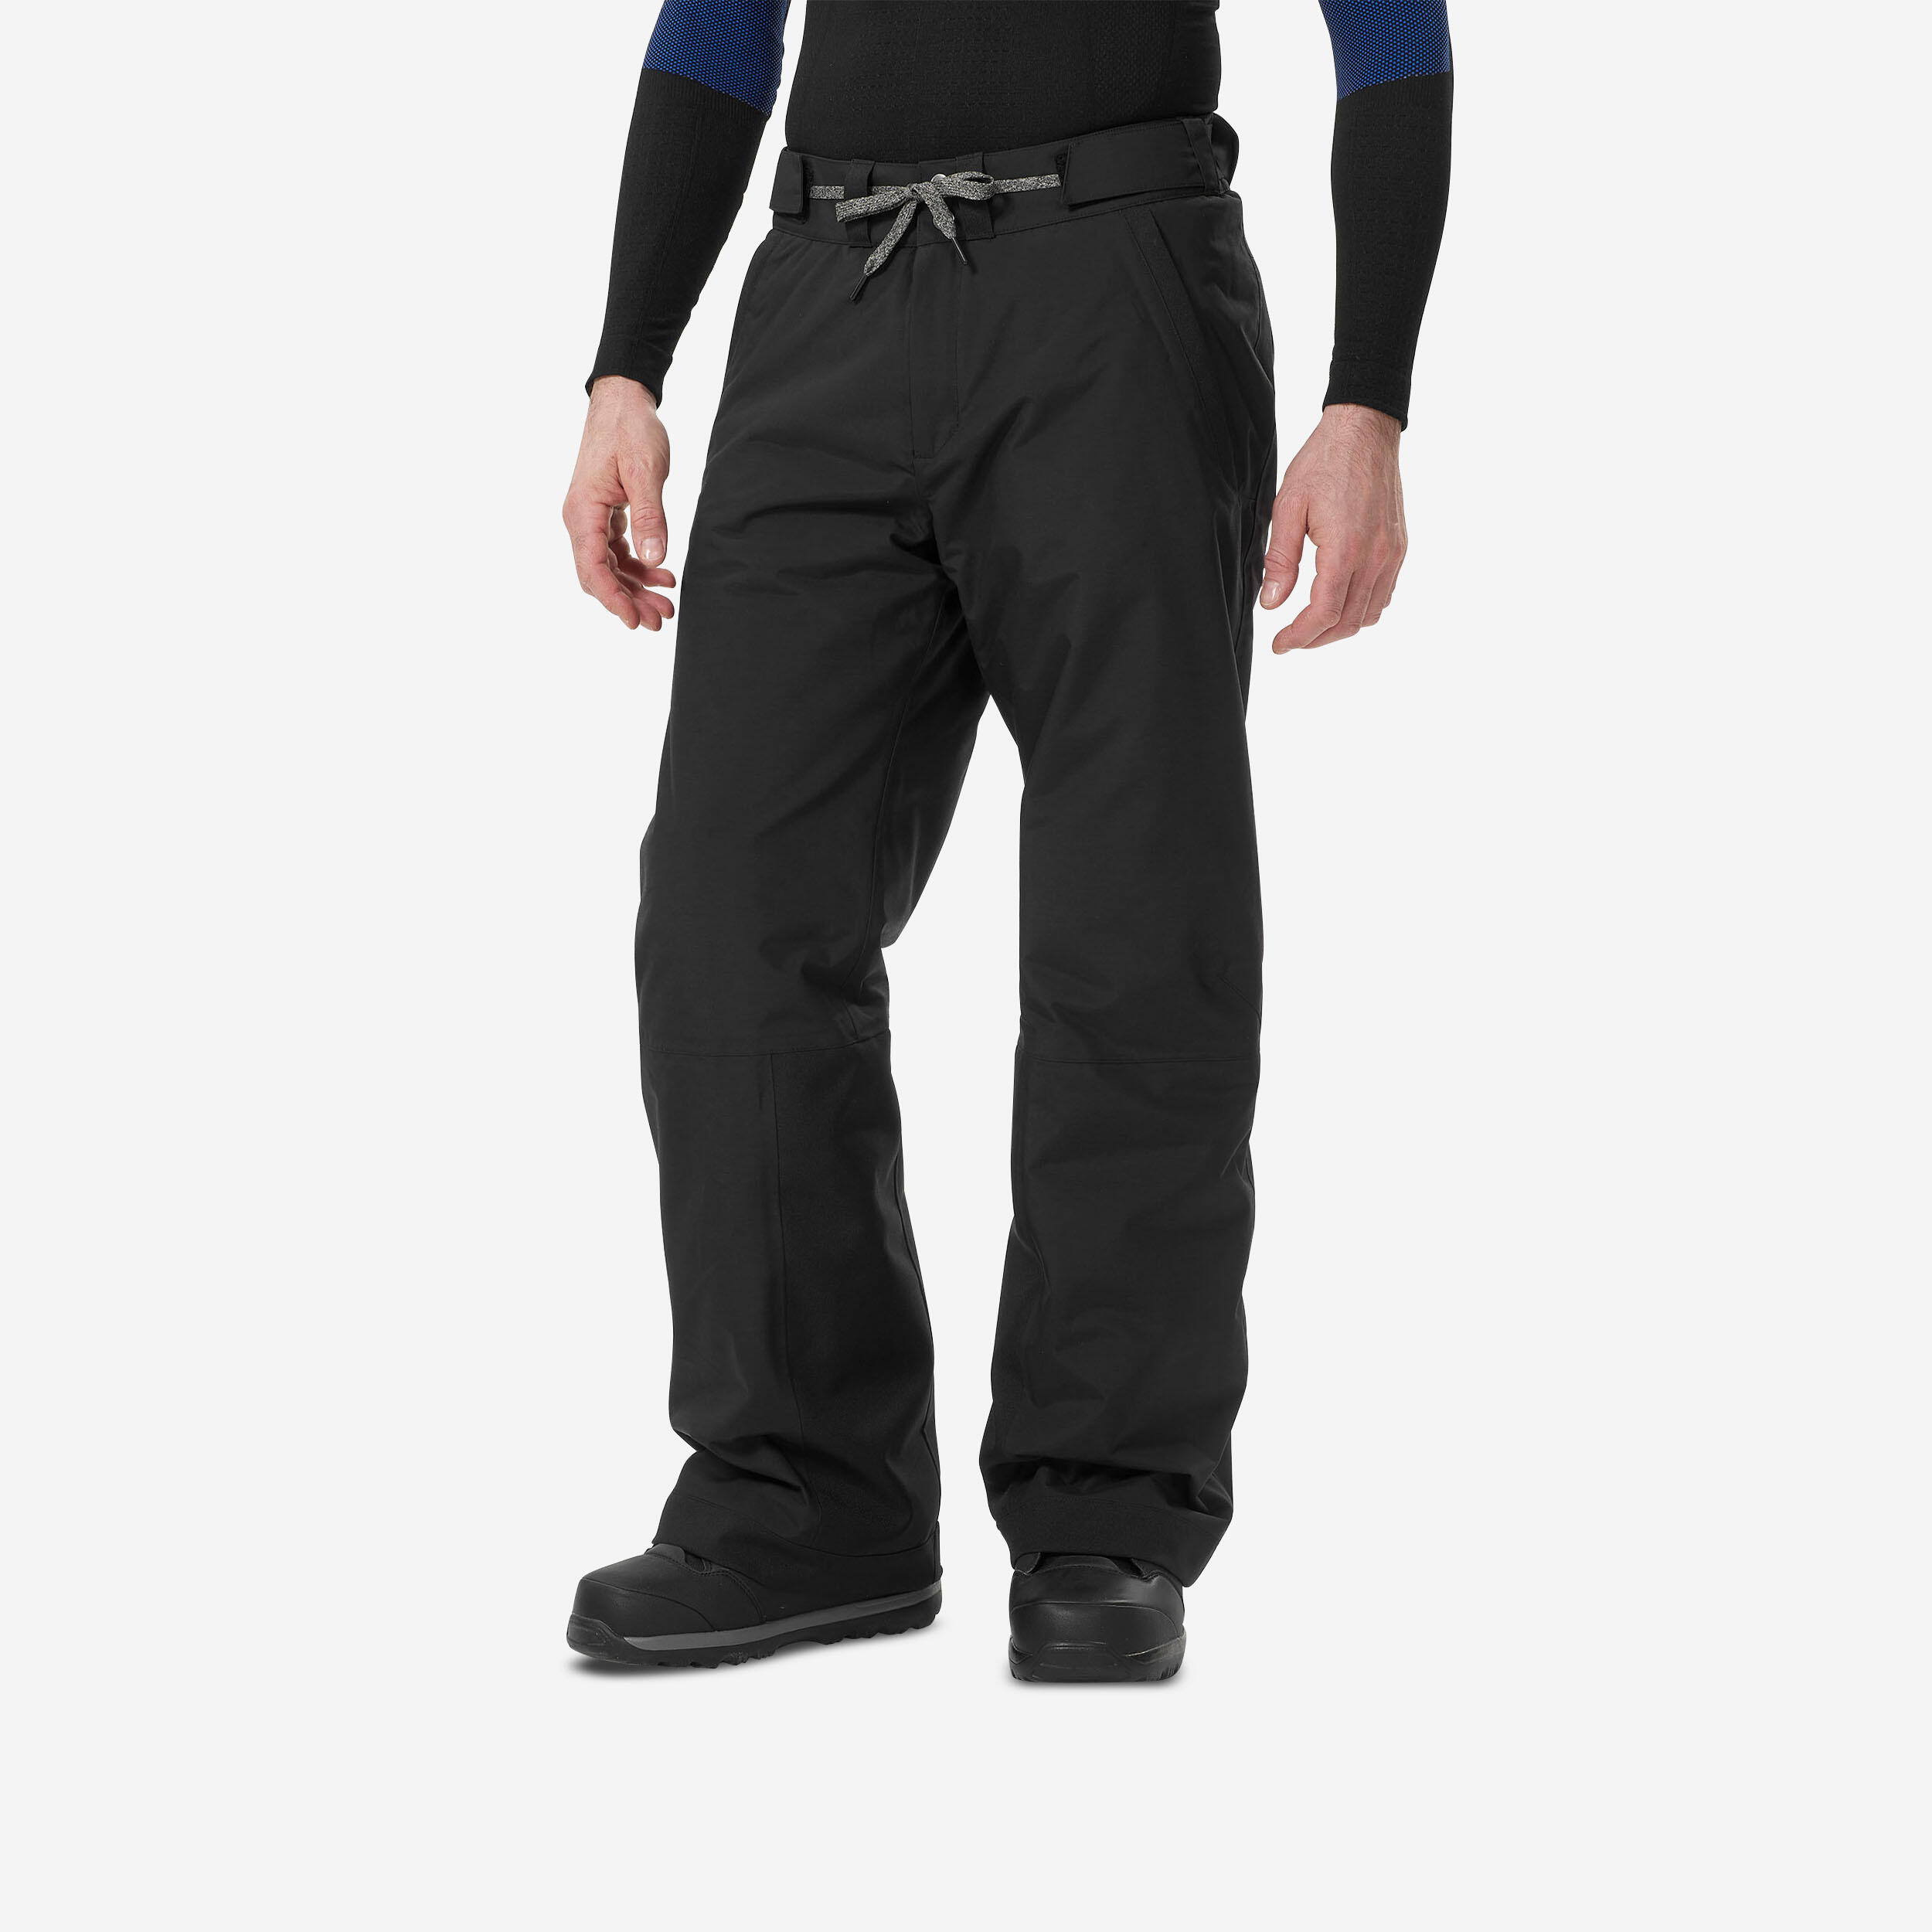 Men’s Ski Pants - Ski 500 Black